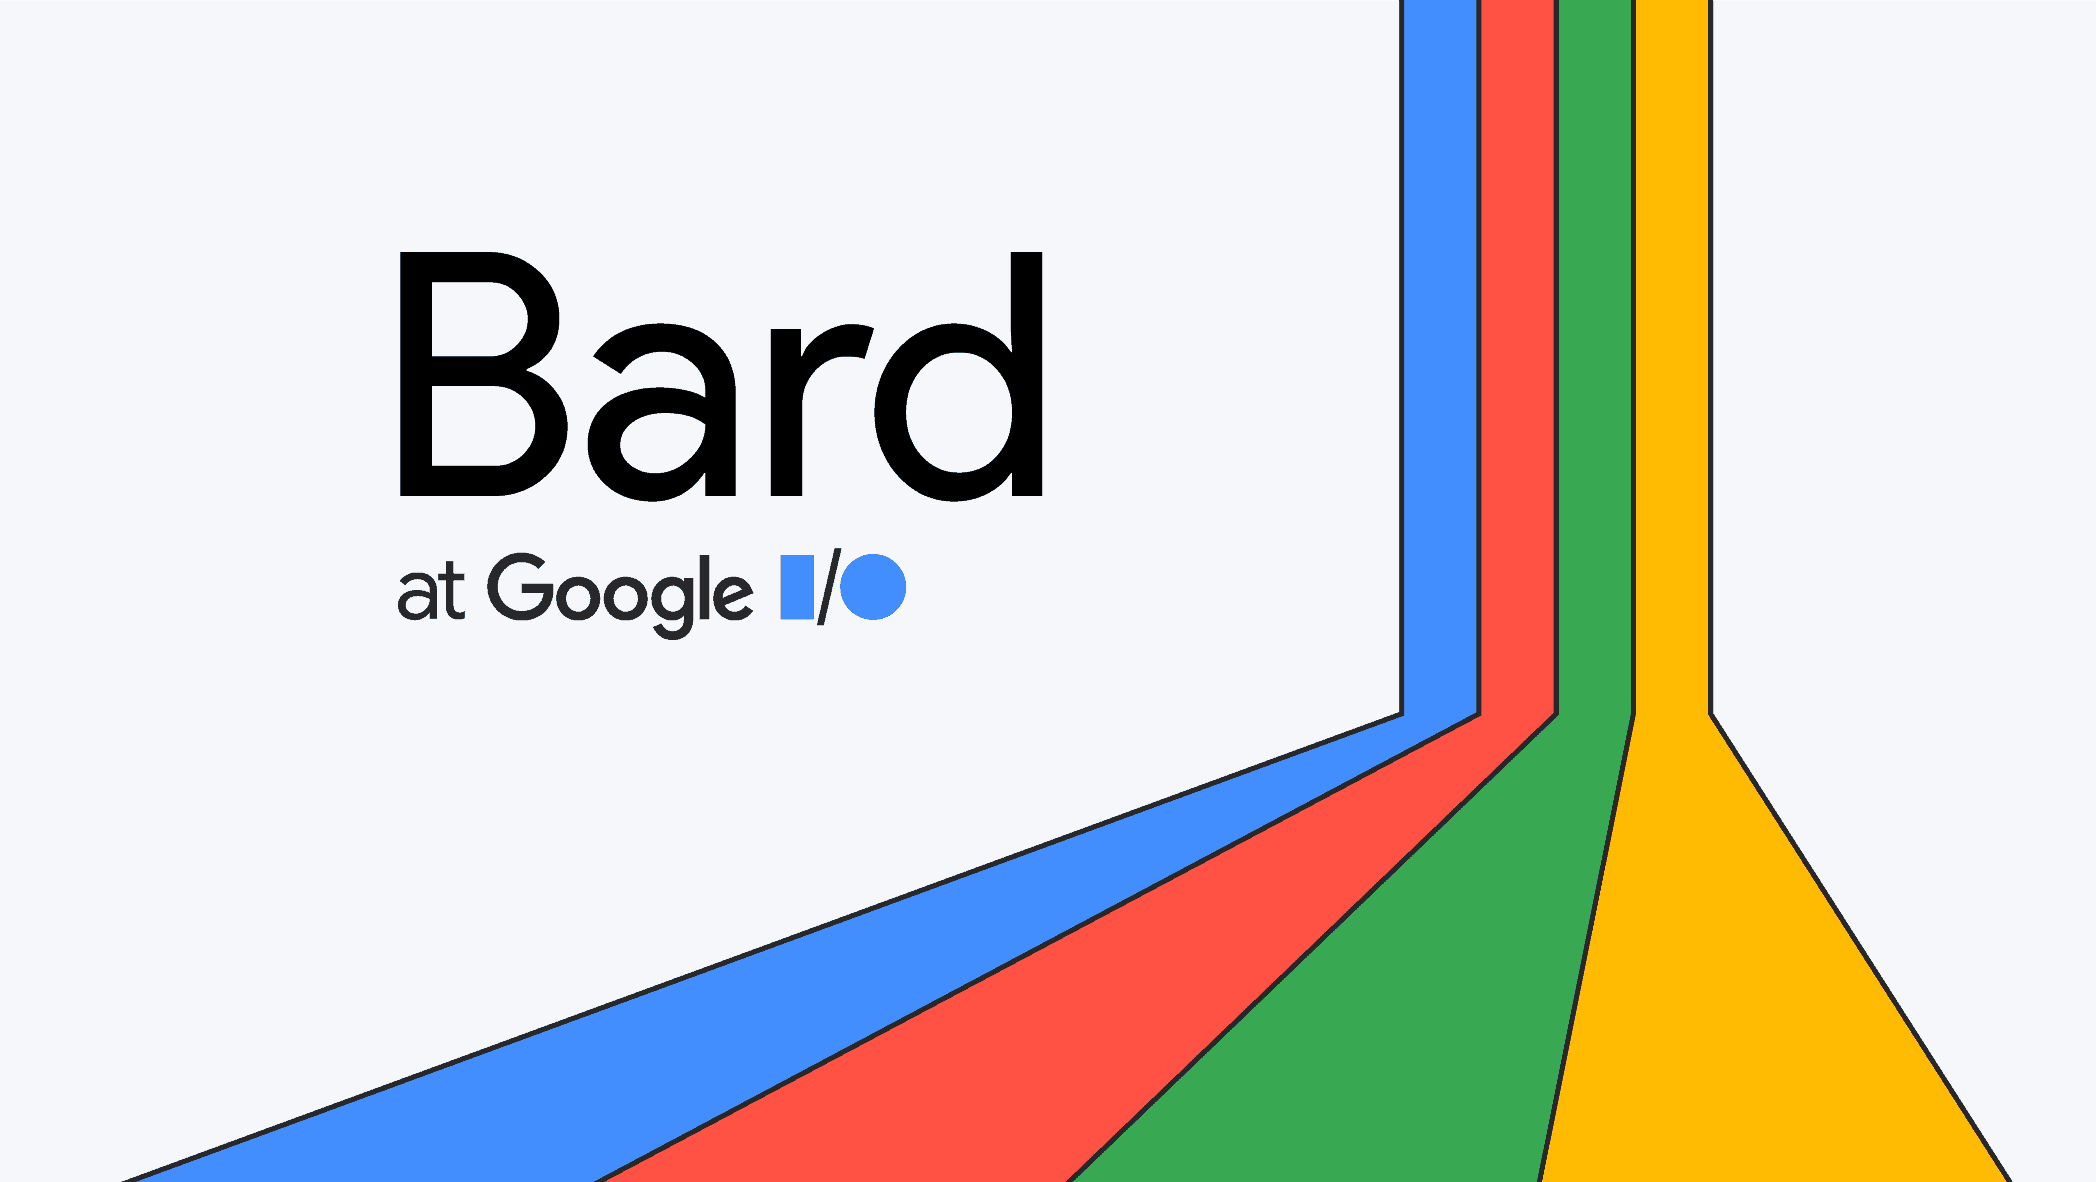 Google rolt AI-assistent Bard uit in 180 landen, maar waarom niet in Europa?